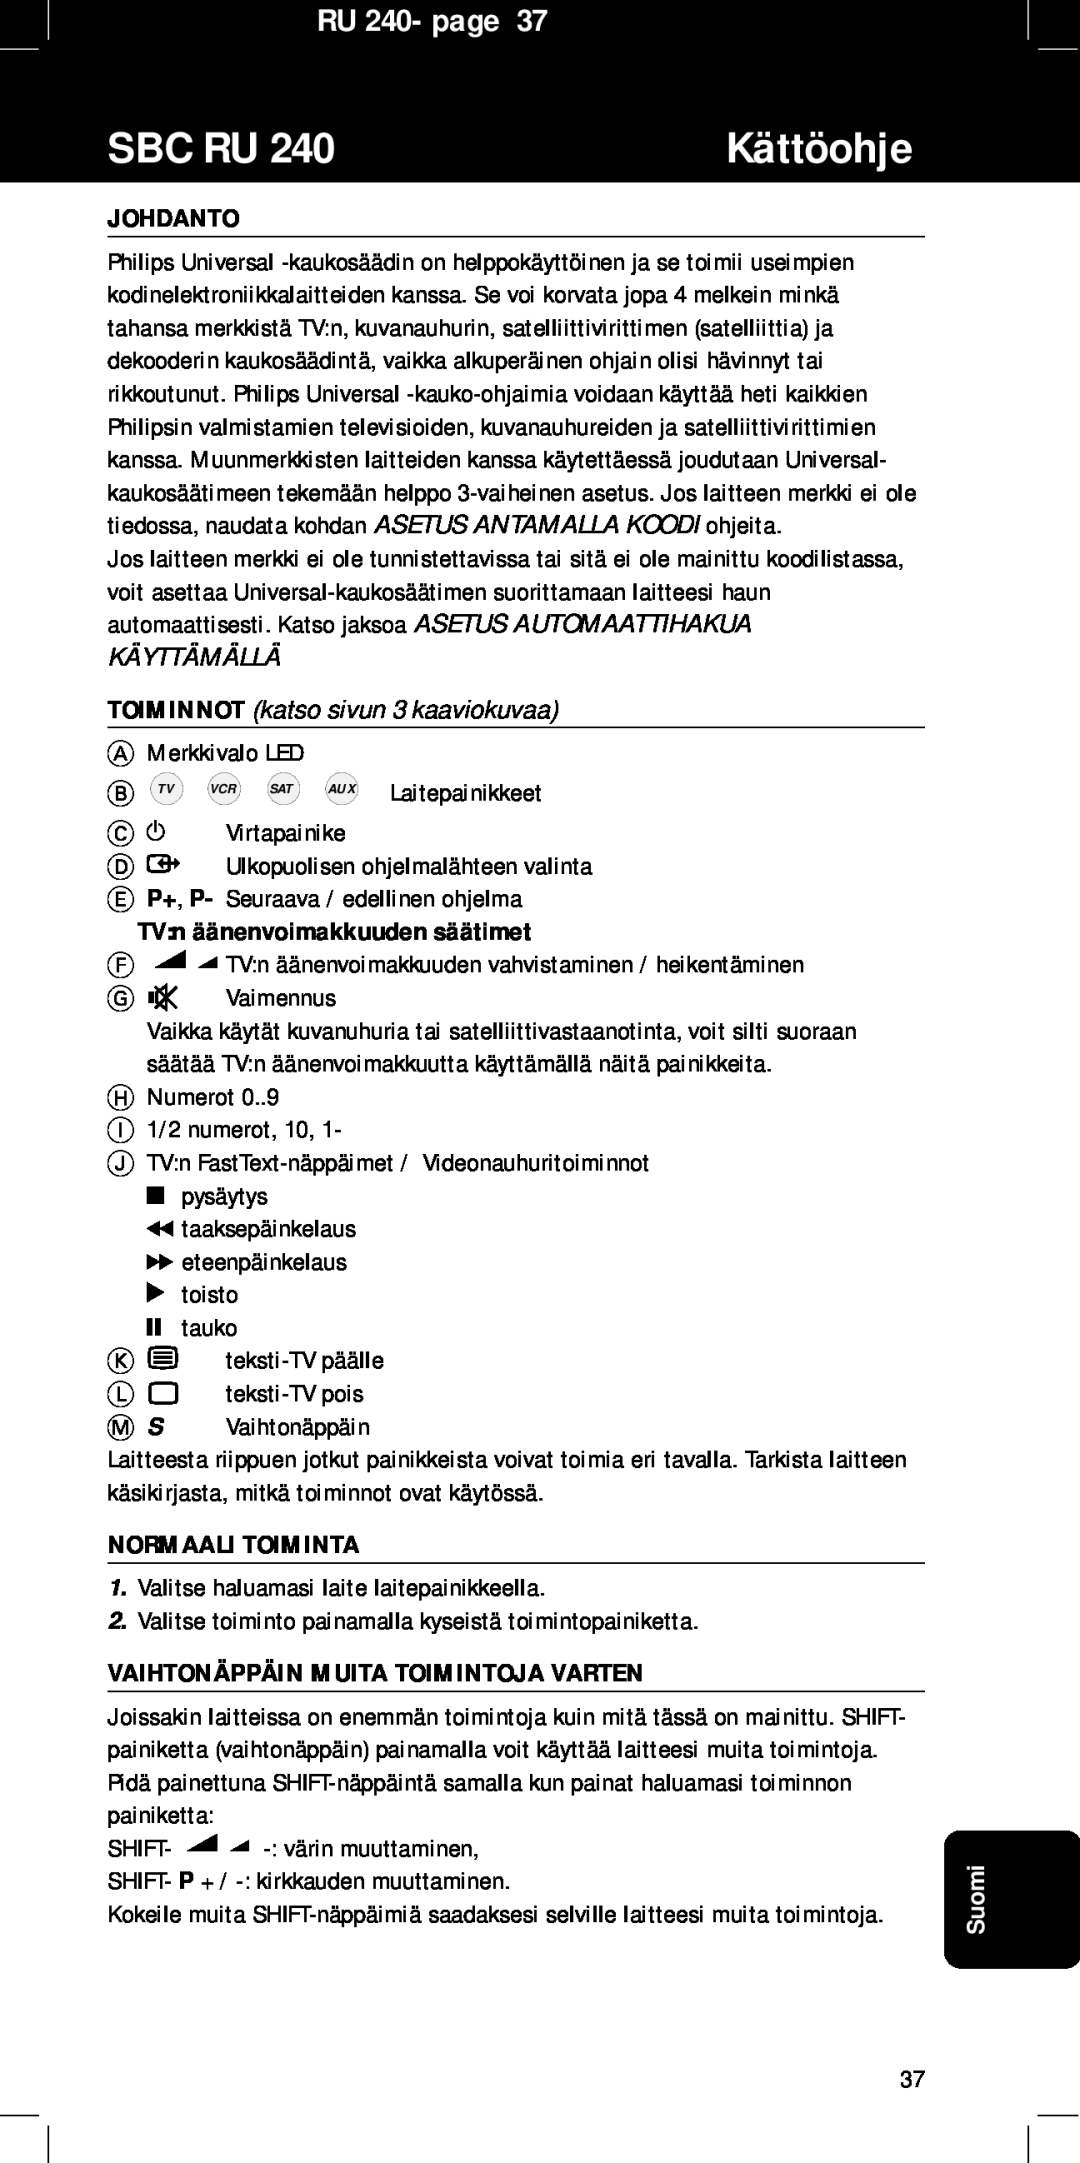 Philips SBC RU240/00U manual Kättöohje, Sbc Ru, RU 240- page, Johdanto, TV n äänenvoimakkuuden säätimet, Normaali Toiminta 